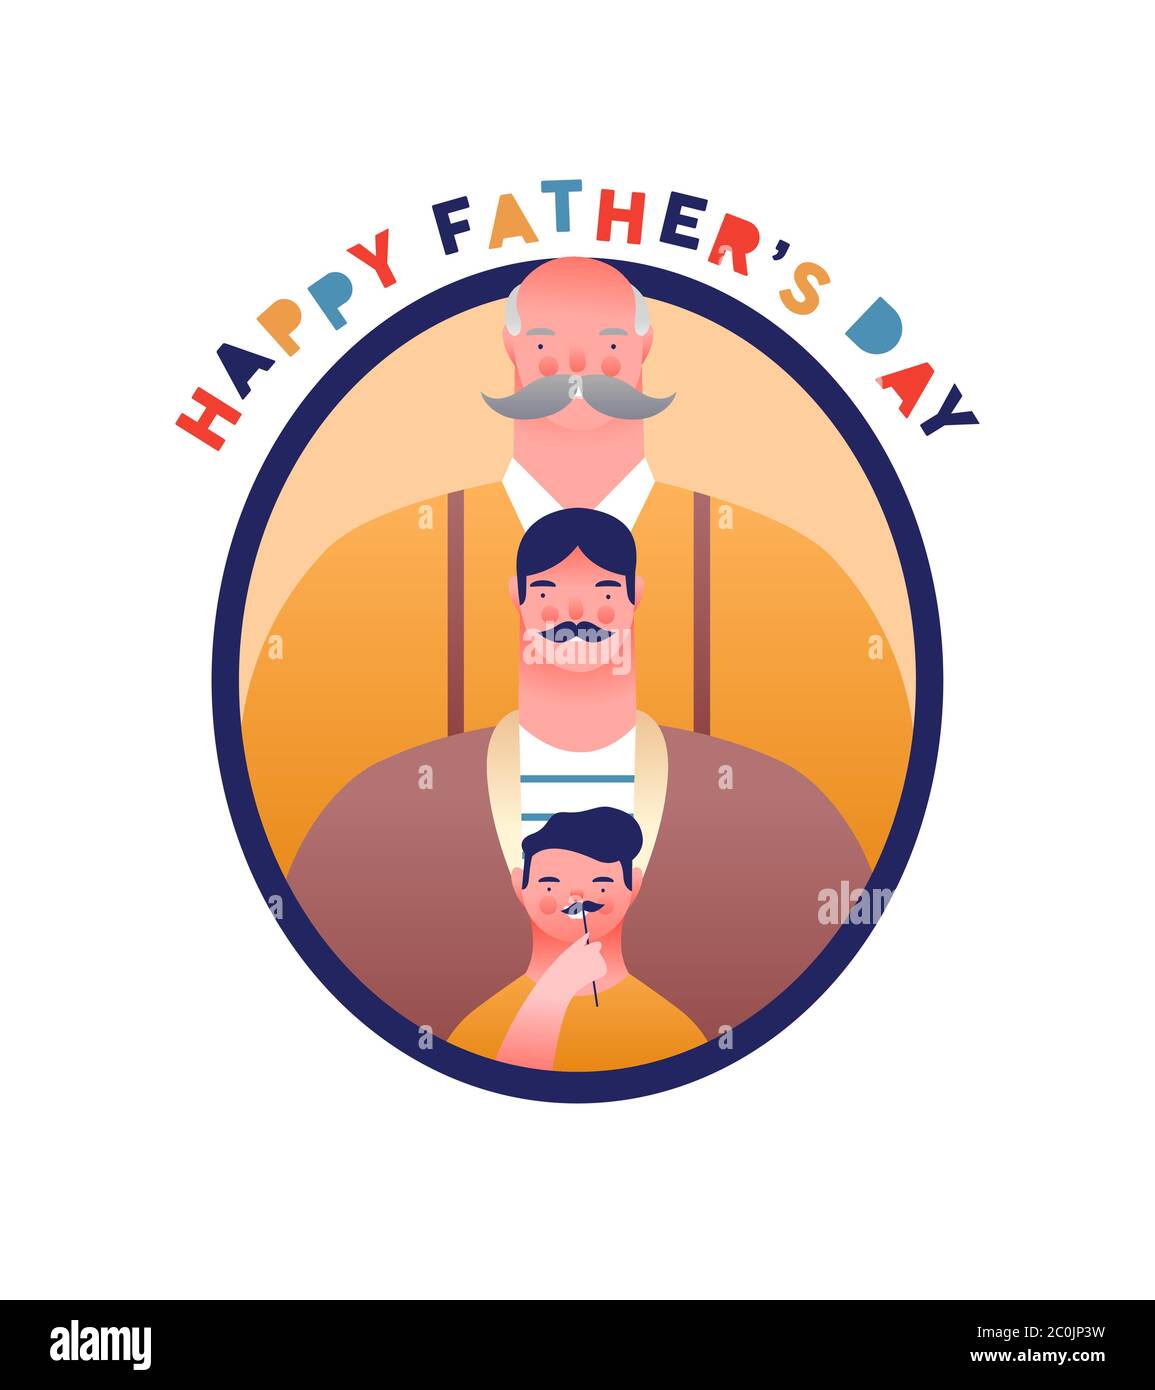 Glückwünsche Vatertag Grußkarte Illustration von lustigen Vater, kleinen Jungen Sohn und Großvater mit großen Schnurrbart. Multi-Generation-Familienportrait für sp Stock Vektor